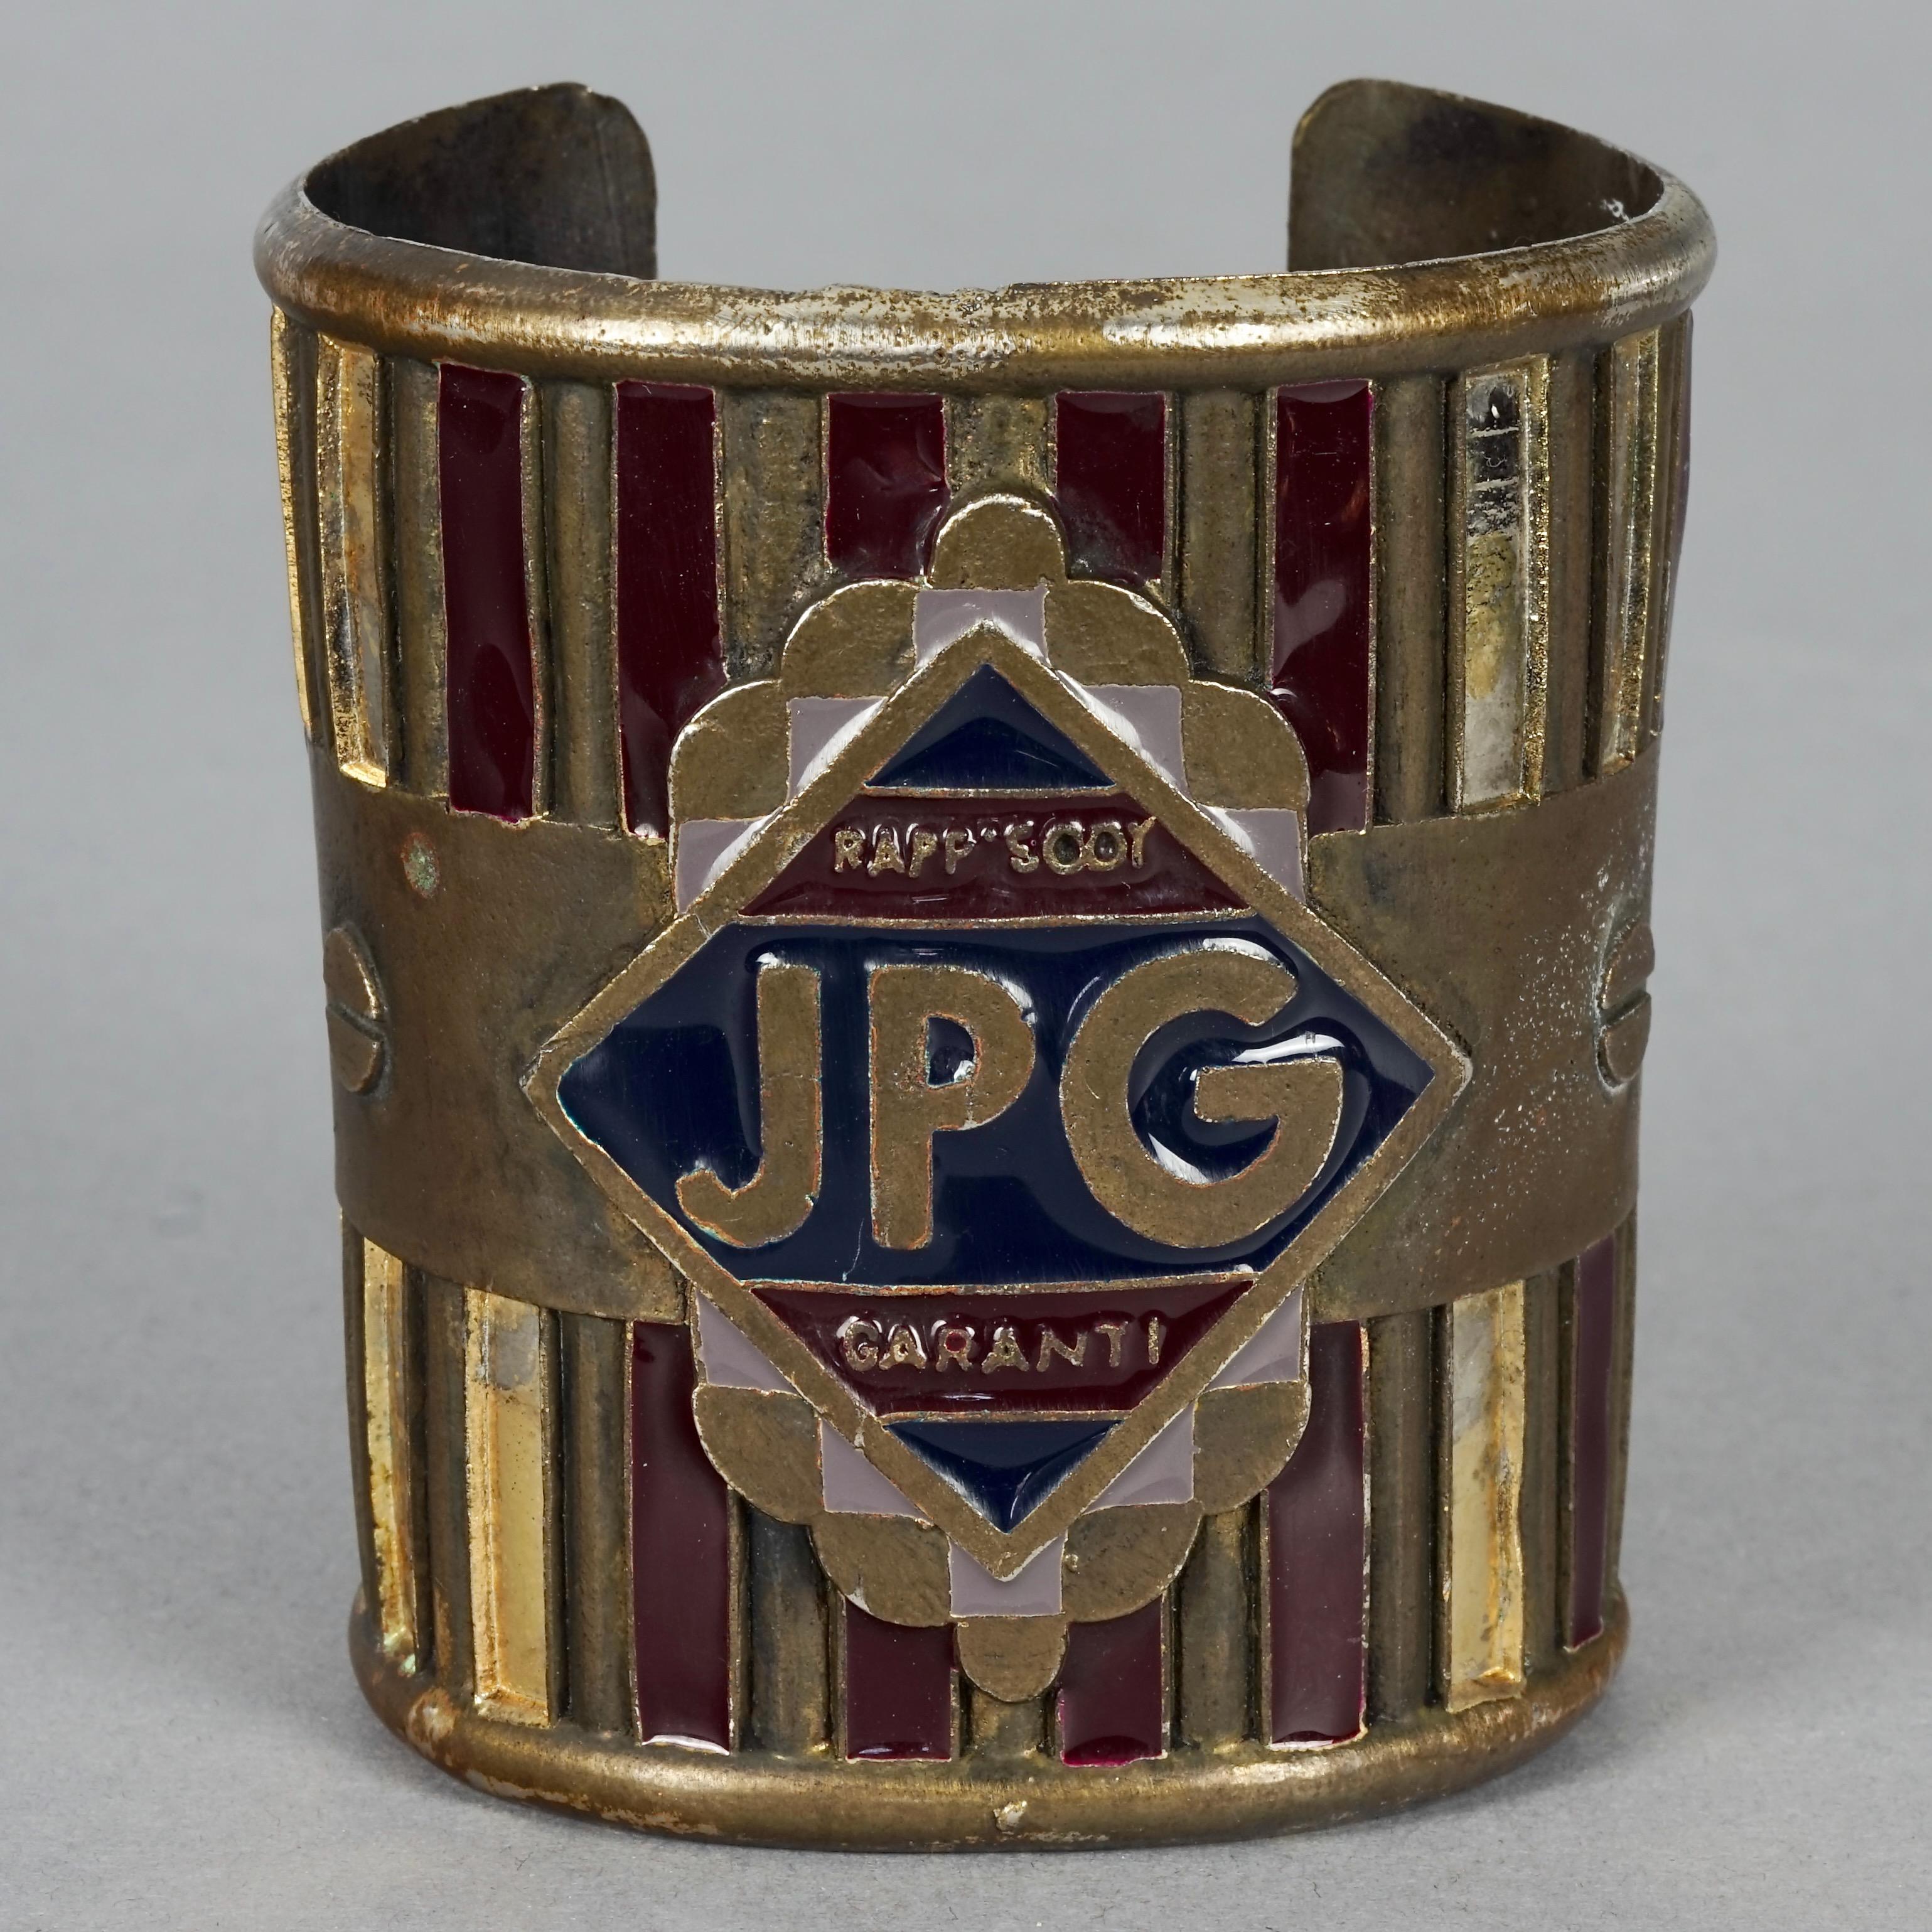 Vintage JEAN PAUL GAULTIER Rapsody Garanti Enamel Rustic Cuff Bracelet For Sale 2